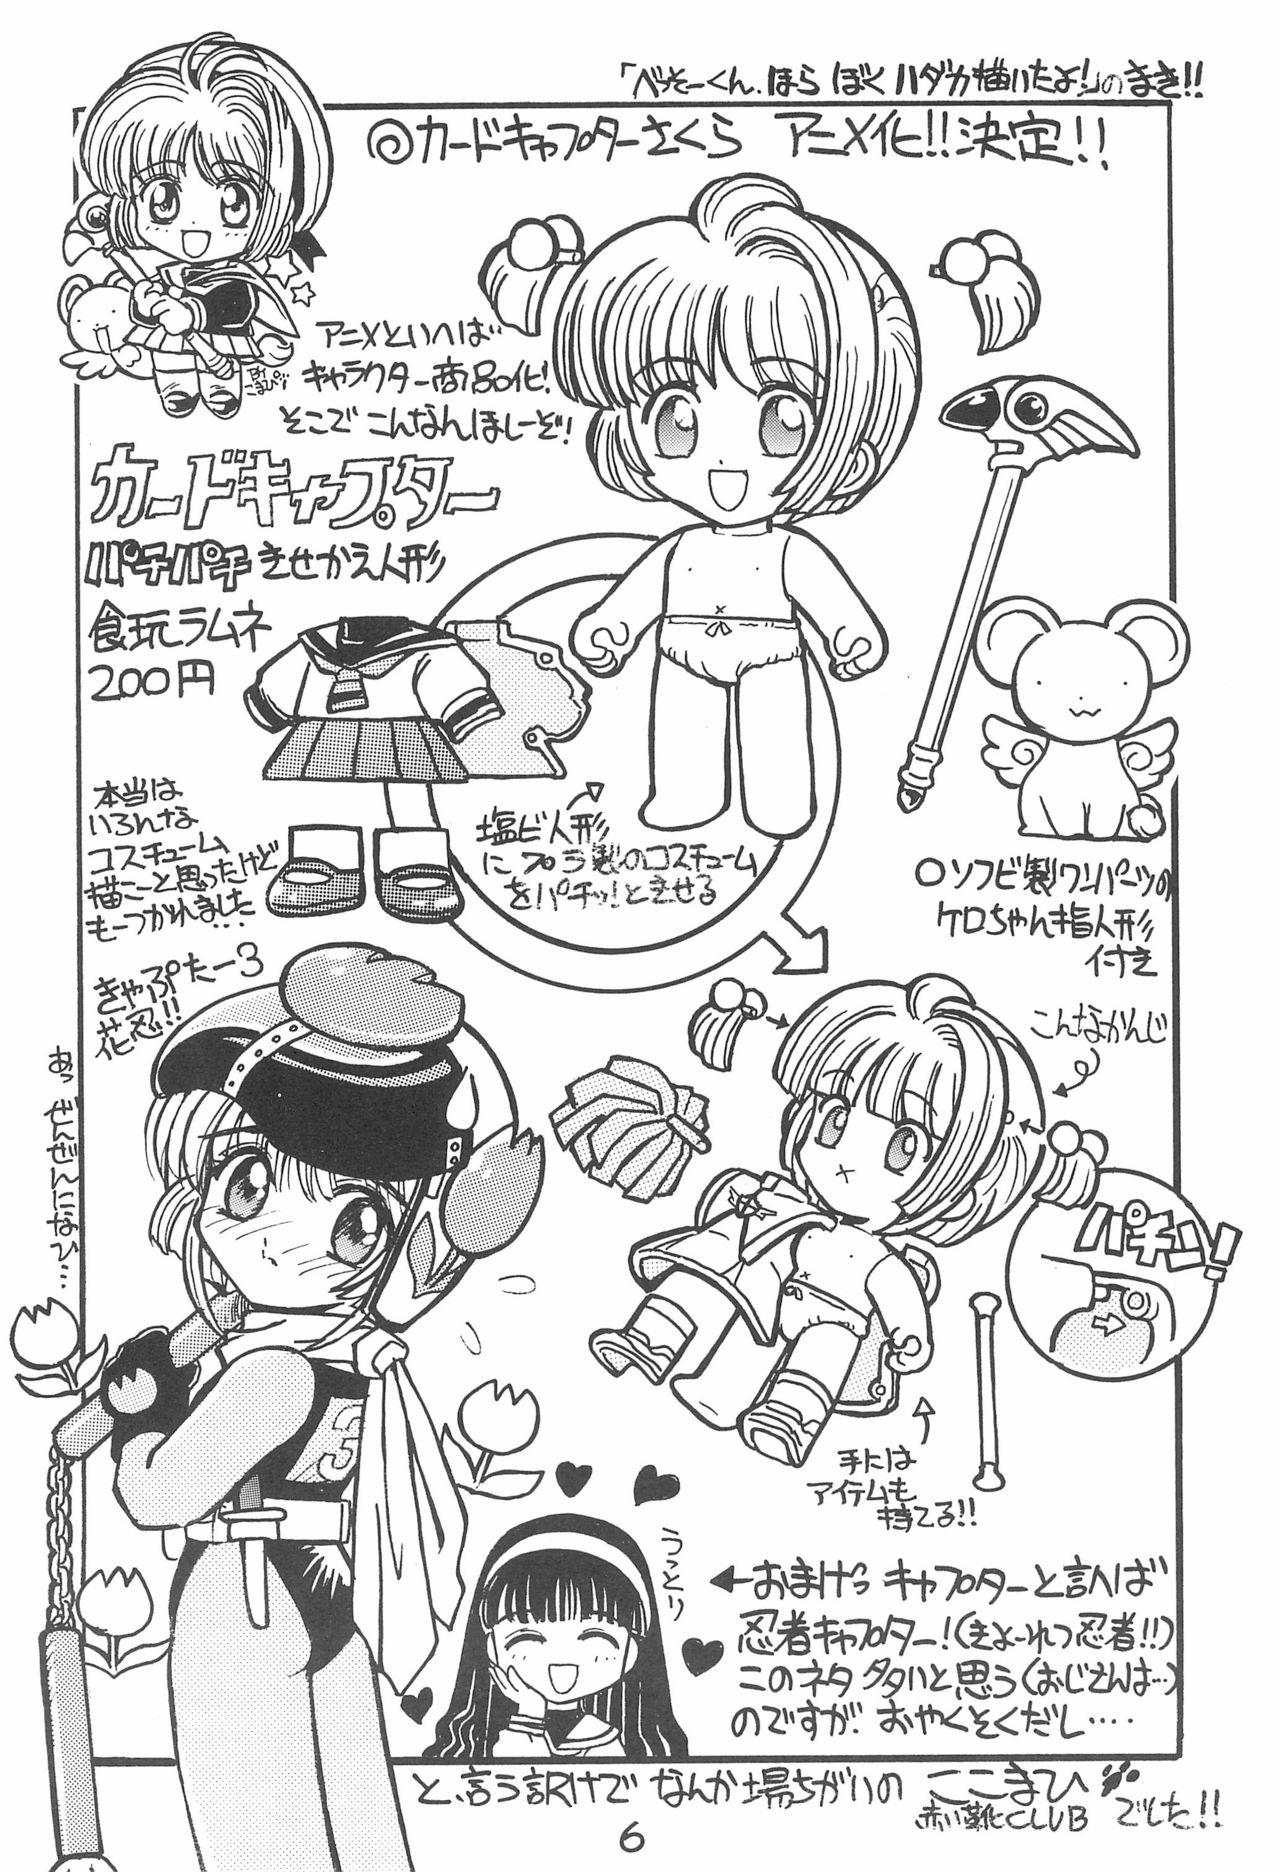 Nurse WILD SNAKE VOL.4 - Cardcaptor sakura Leite - Page 6